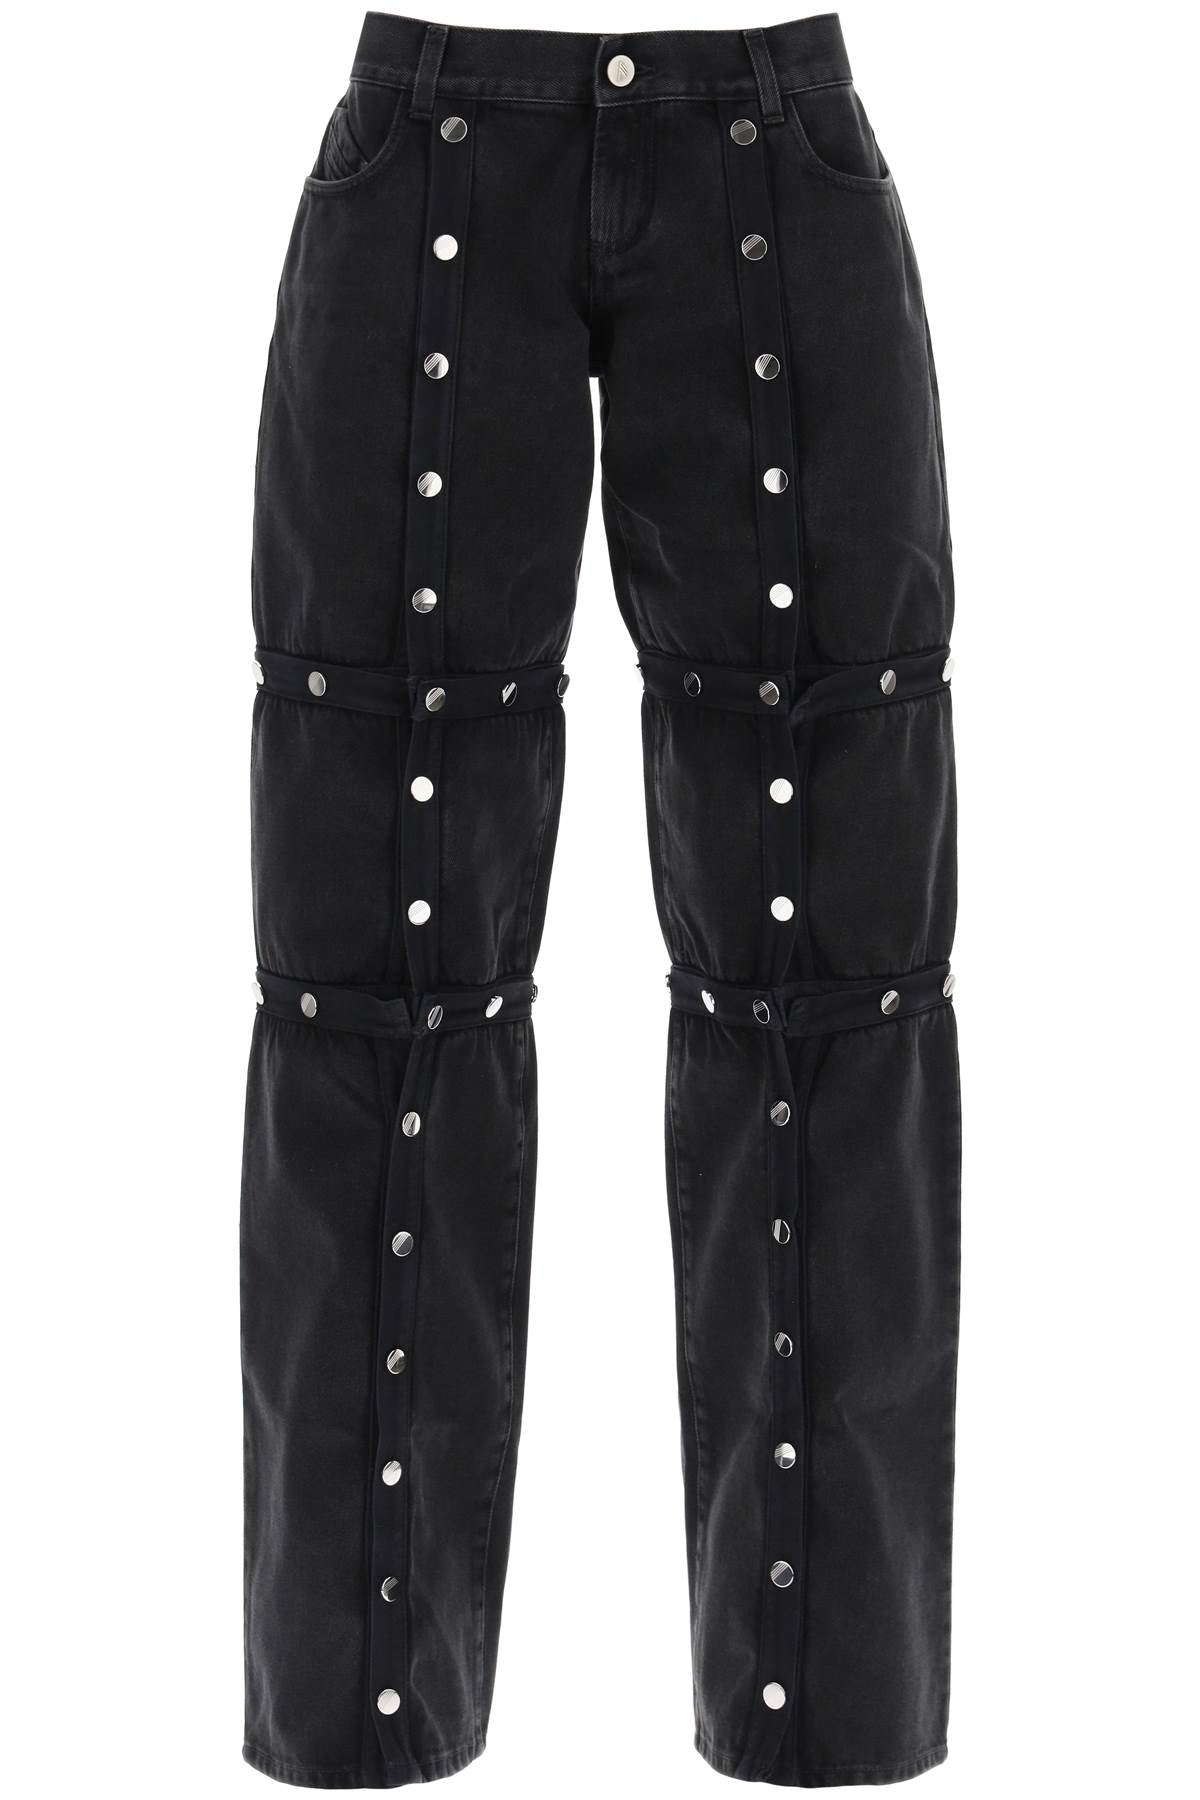 Woman's Loose-Fit Black Denim Pants with Detachable Panels